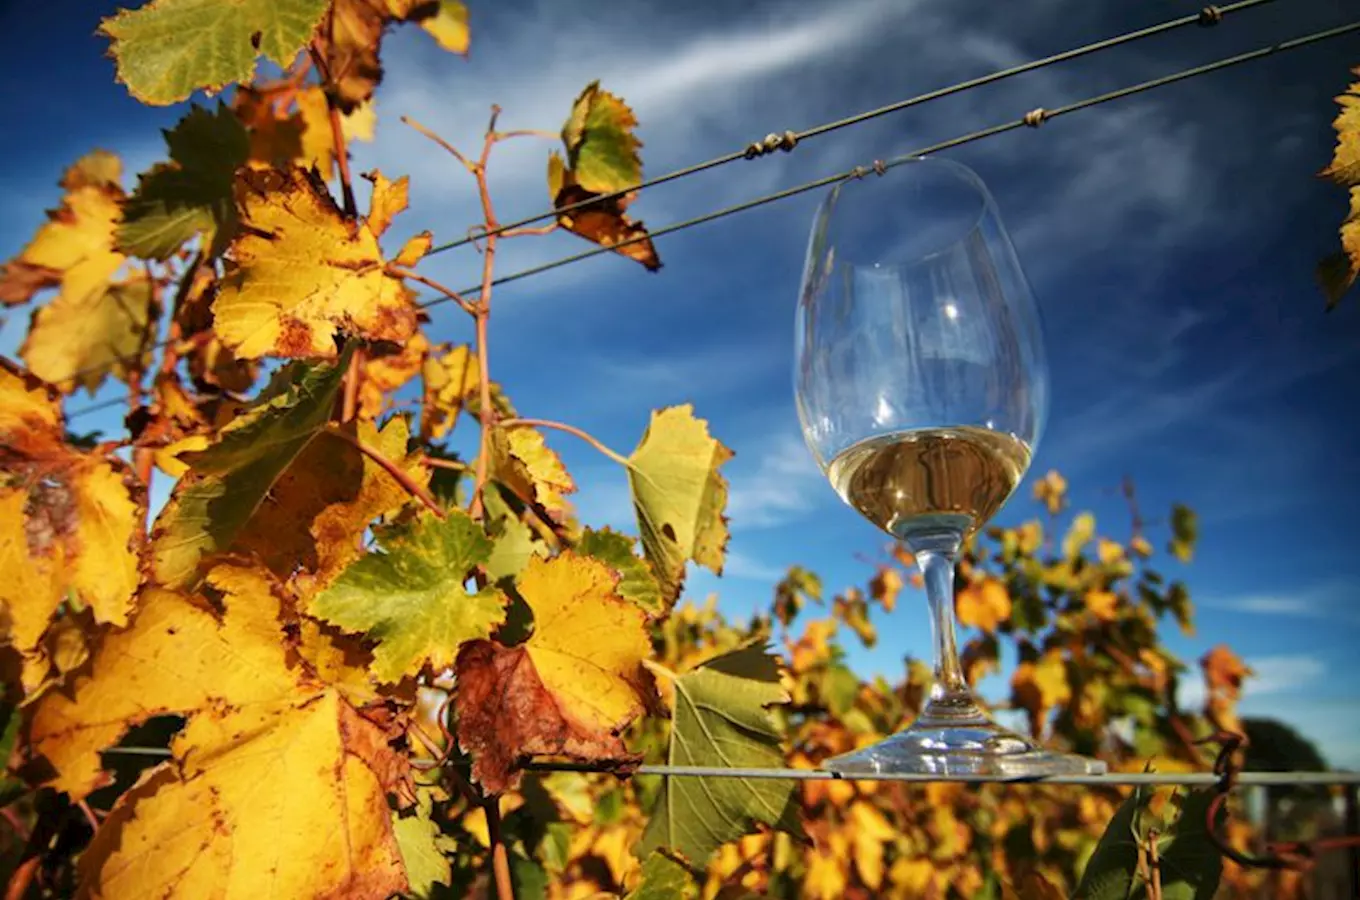 Rodinné vinařství U Samsonů – vína tradičních odrůd